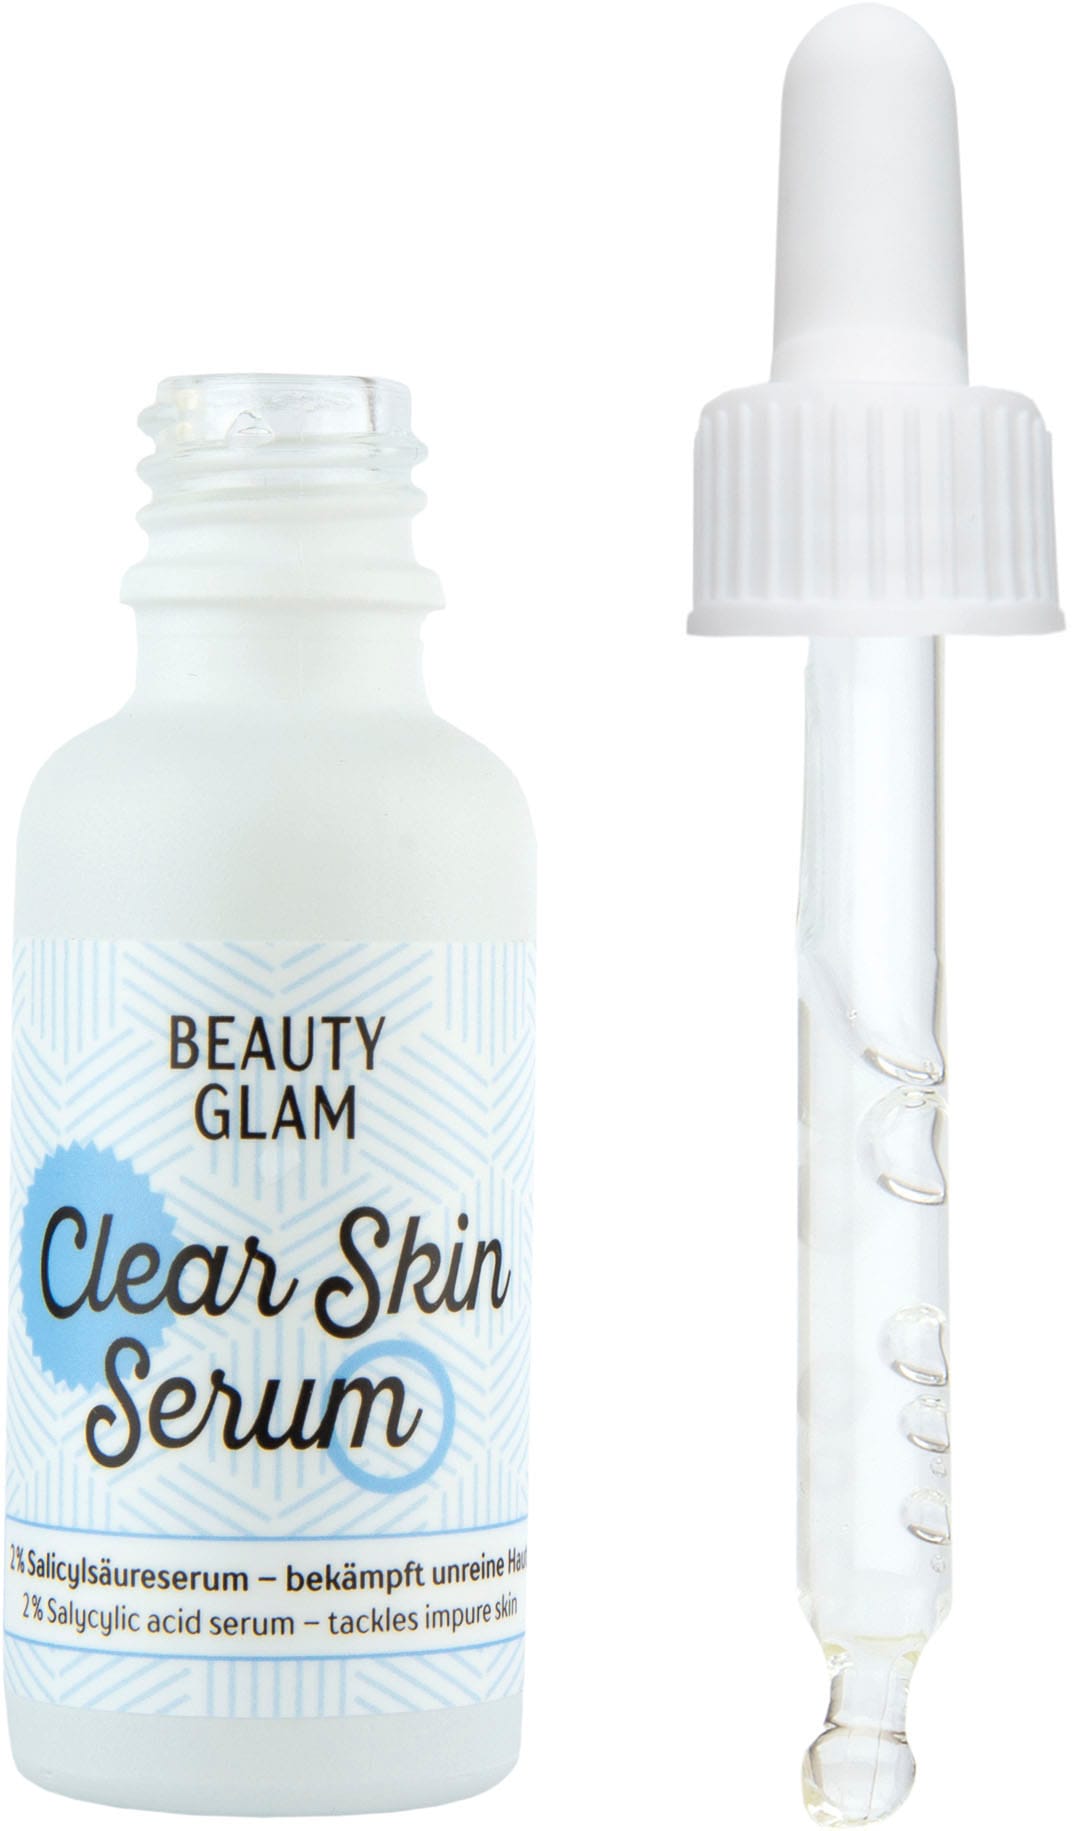 OTTO Serum« Shop Glam im Clear BEAUTY kaufen Skin GLAM »Beauty Gesichtsserum Online